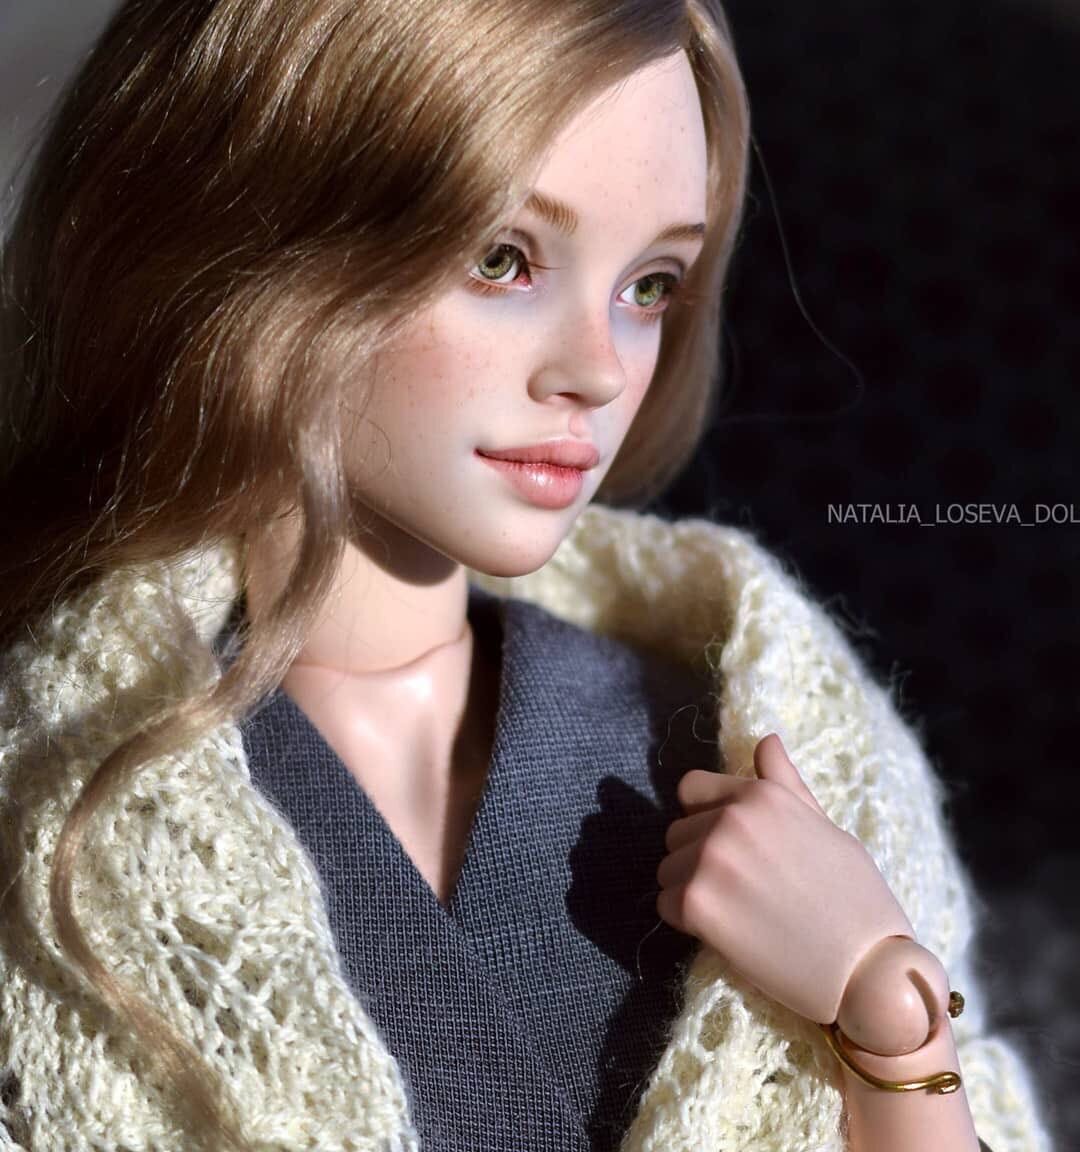  Наталья Лосева, мастерица из Новосибирска,  создает невероятно красивых реалистичных шарнирных  кукол.  Куколки небольшие, всего 36 см, очень изящные и нежные, с разным характером и настроением.-8-18